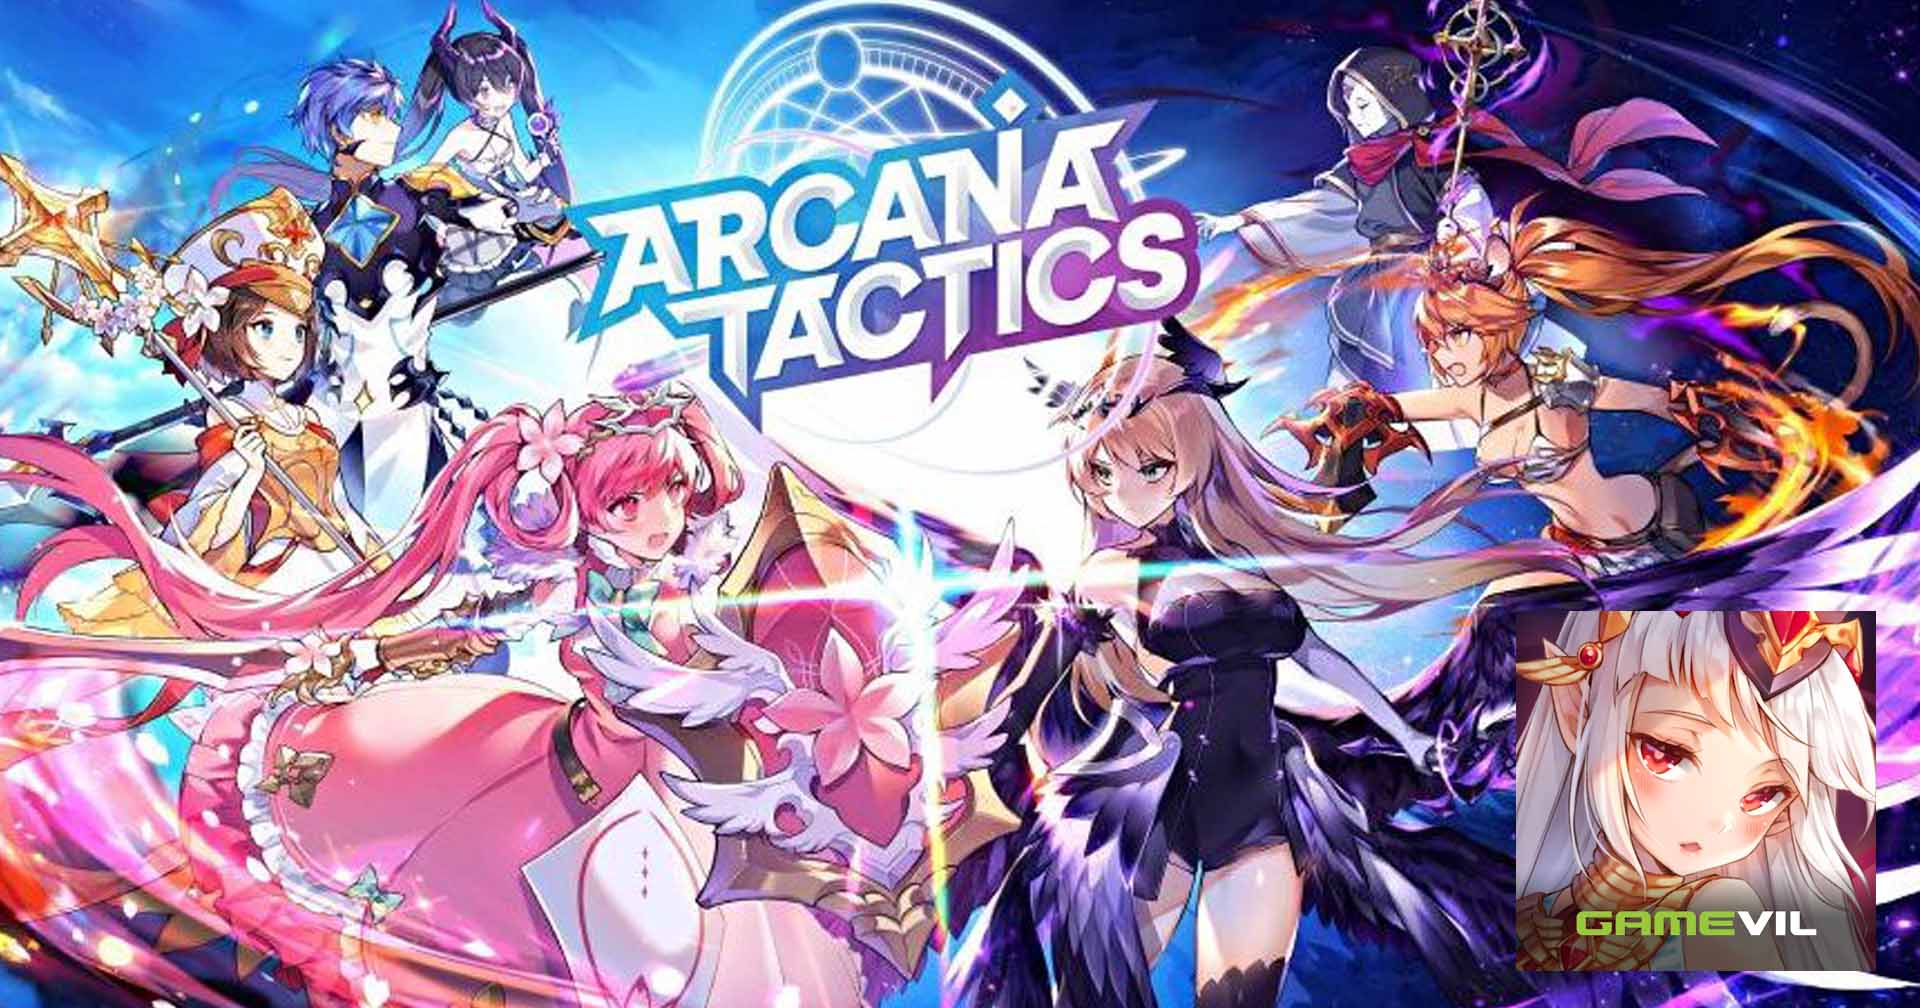 [รีวิวเกม] Arcana Tactics เกมมือถือ แนวผสมตัวละครต่อสู้สุดท้าทาย เล่นแล้วติดหนึบ